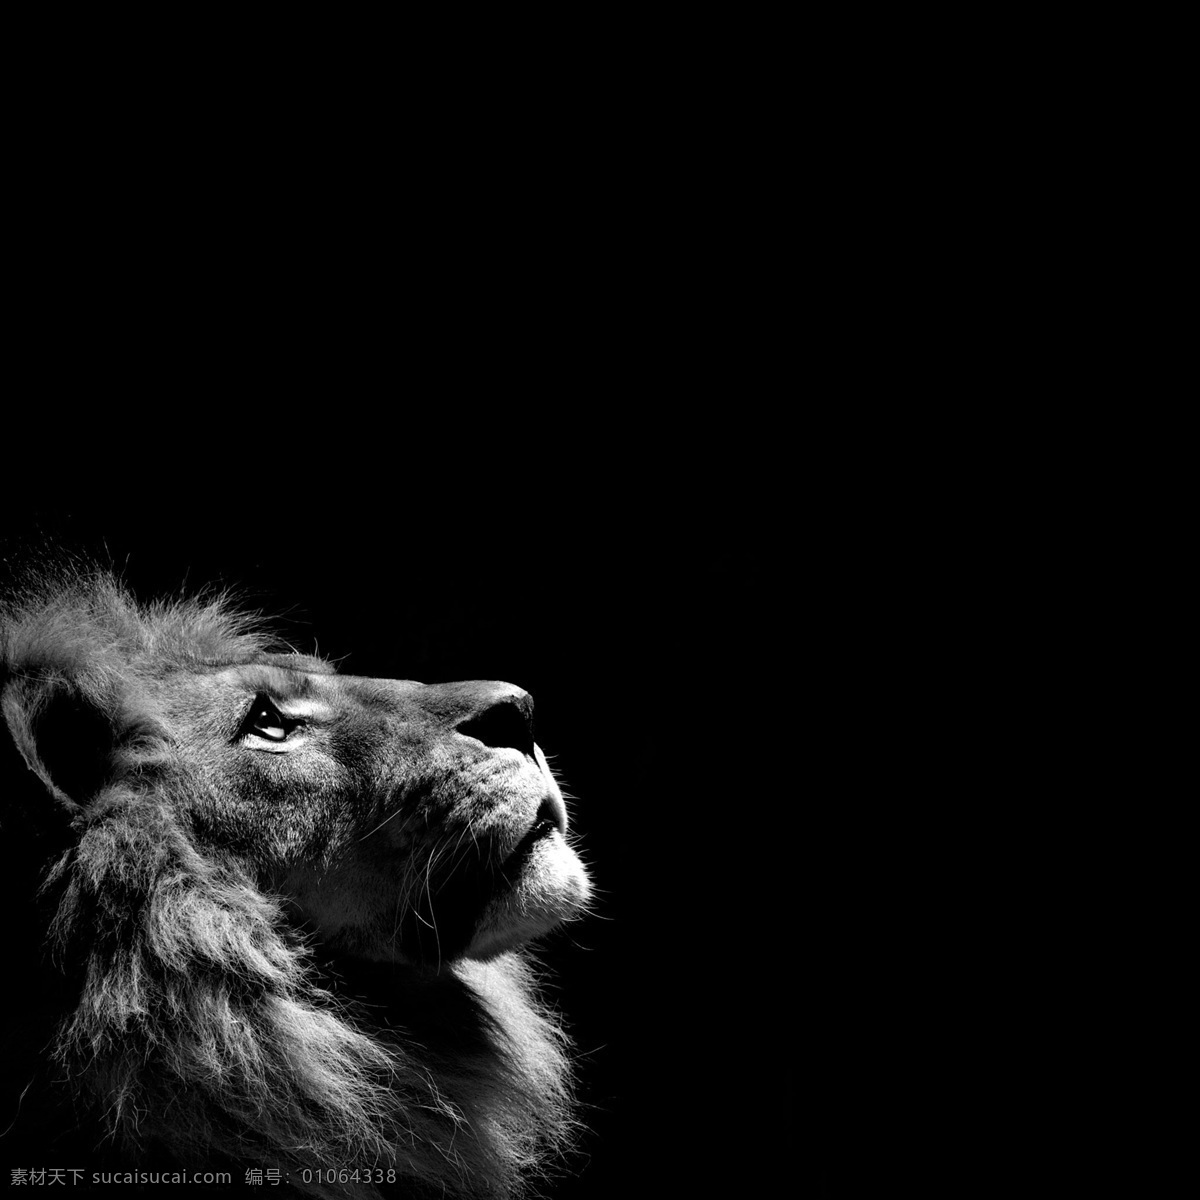 雄狮的仰望 狮子 灰色 黑色背景 仰望 雄狮 动物 其他生物 生物世界